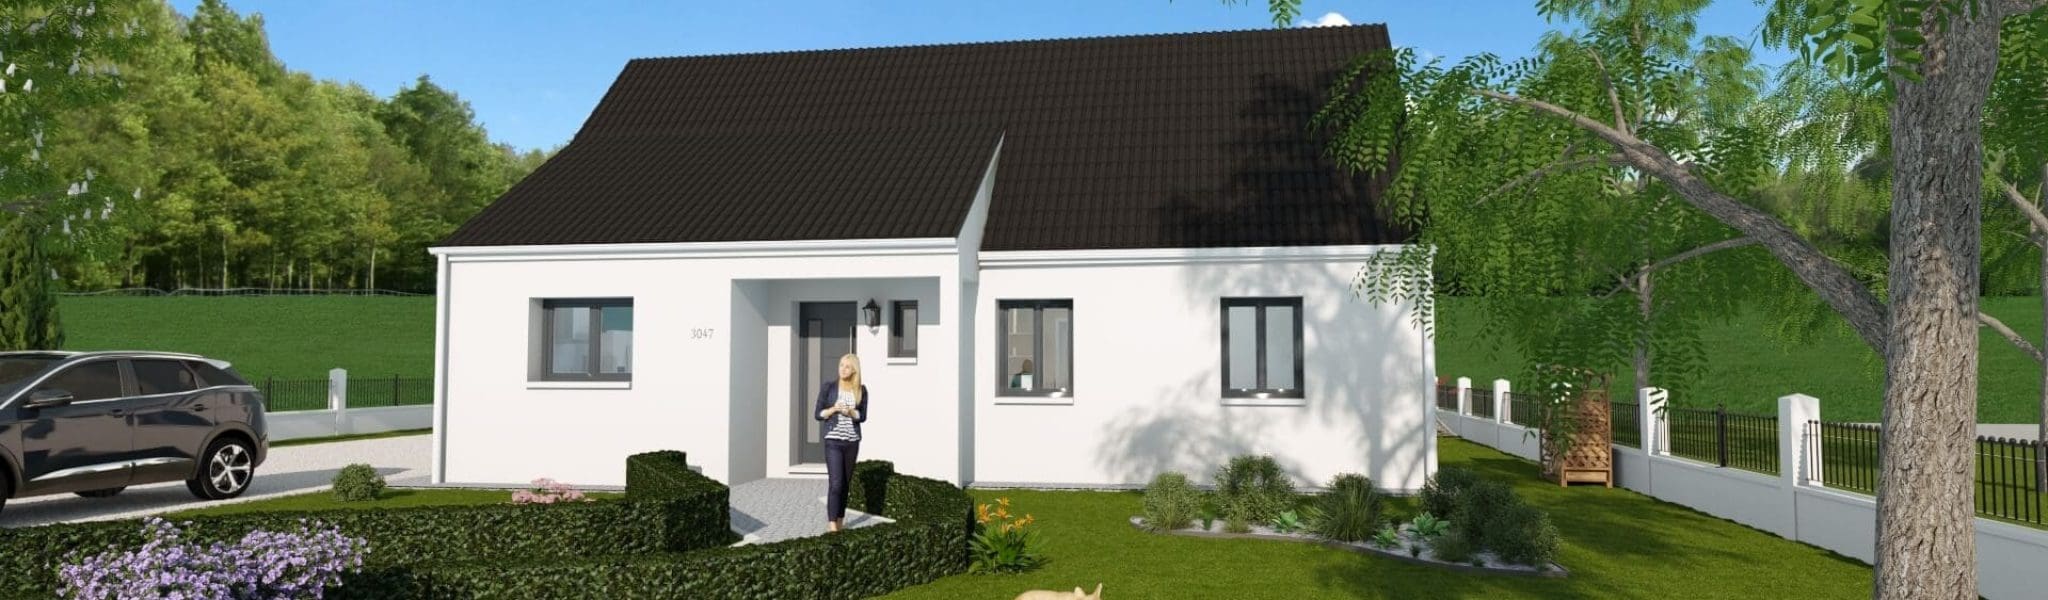 Plan de la maison Lina en 3D avec un grand jardin